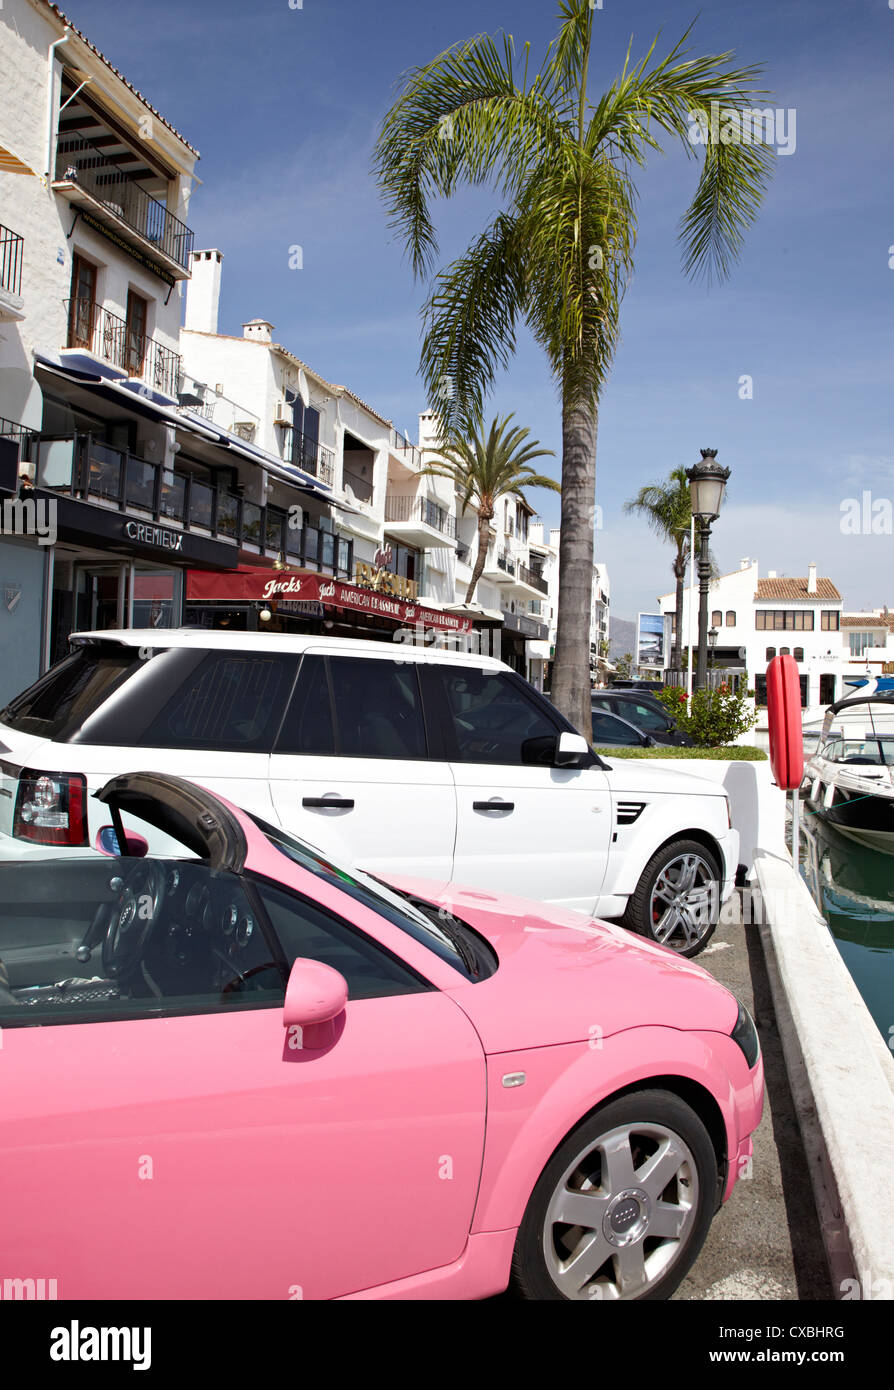 Puerto banus marbella cars fotografías e imágenes de alta resolución - Alamy